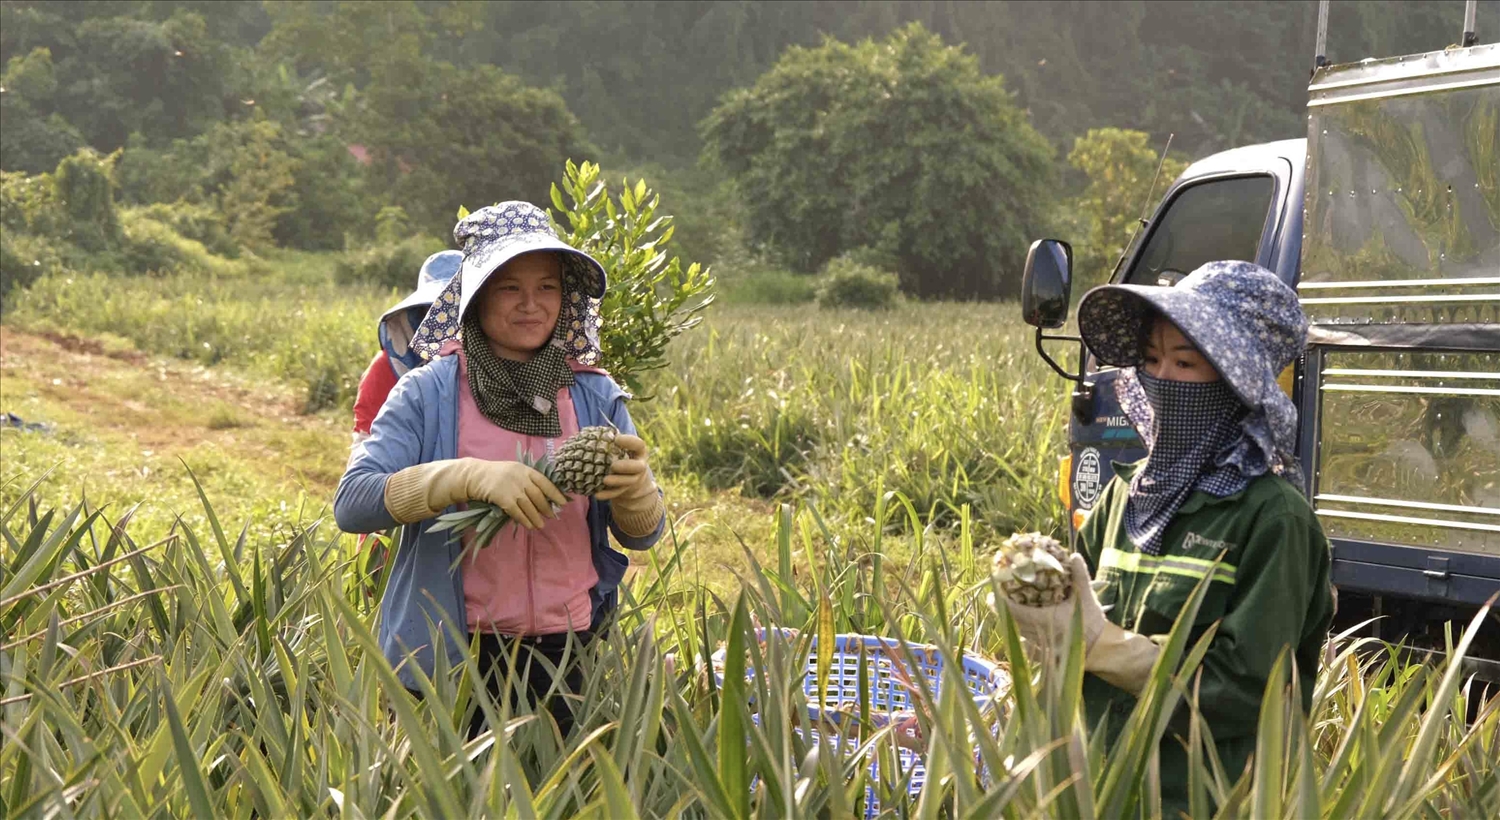 Nông dân xã Nậm Tăm, huyện Sìn Hồ thu hoạch dứa theo chính sách liên kết bao tiêu sản phẩm với doanh nghiệp.